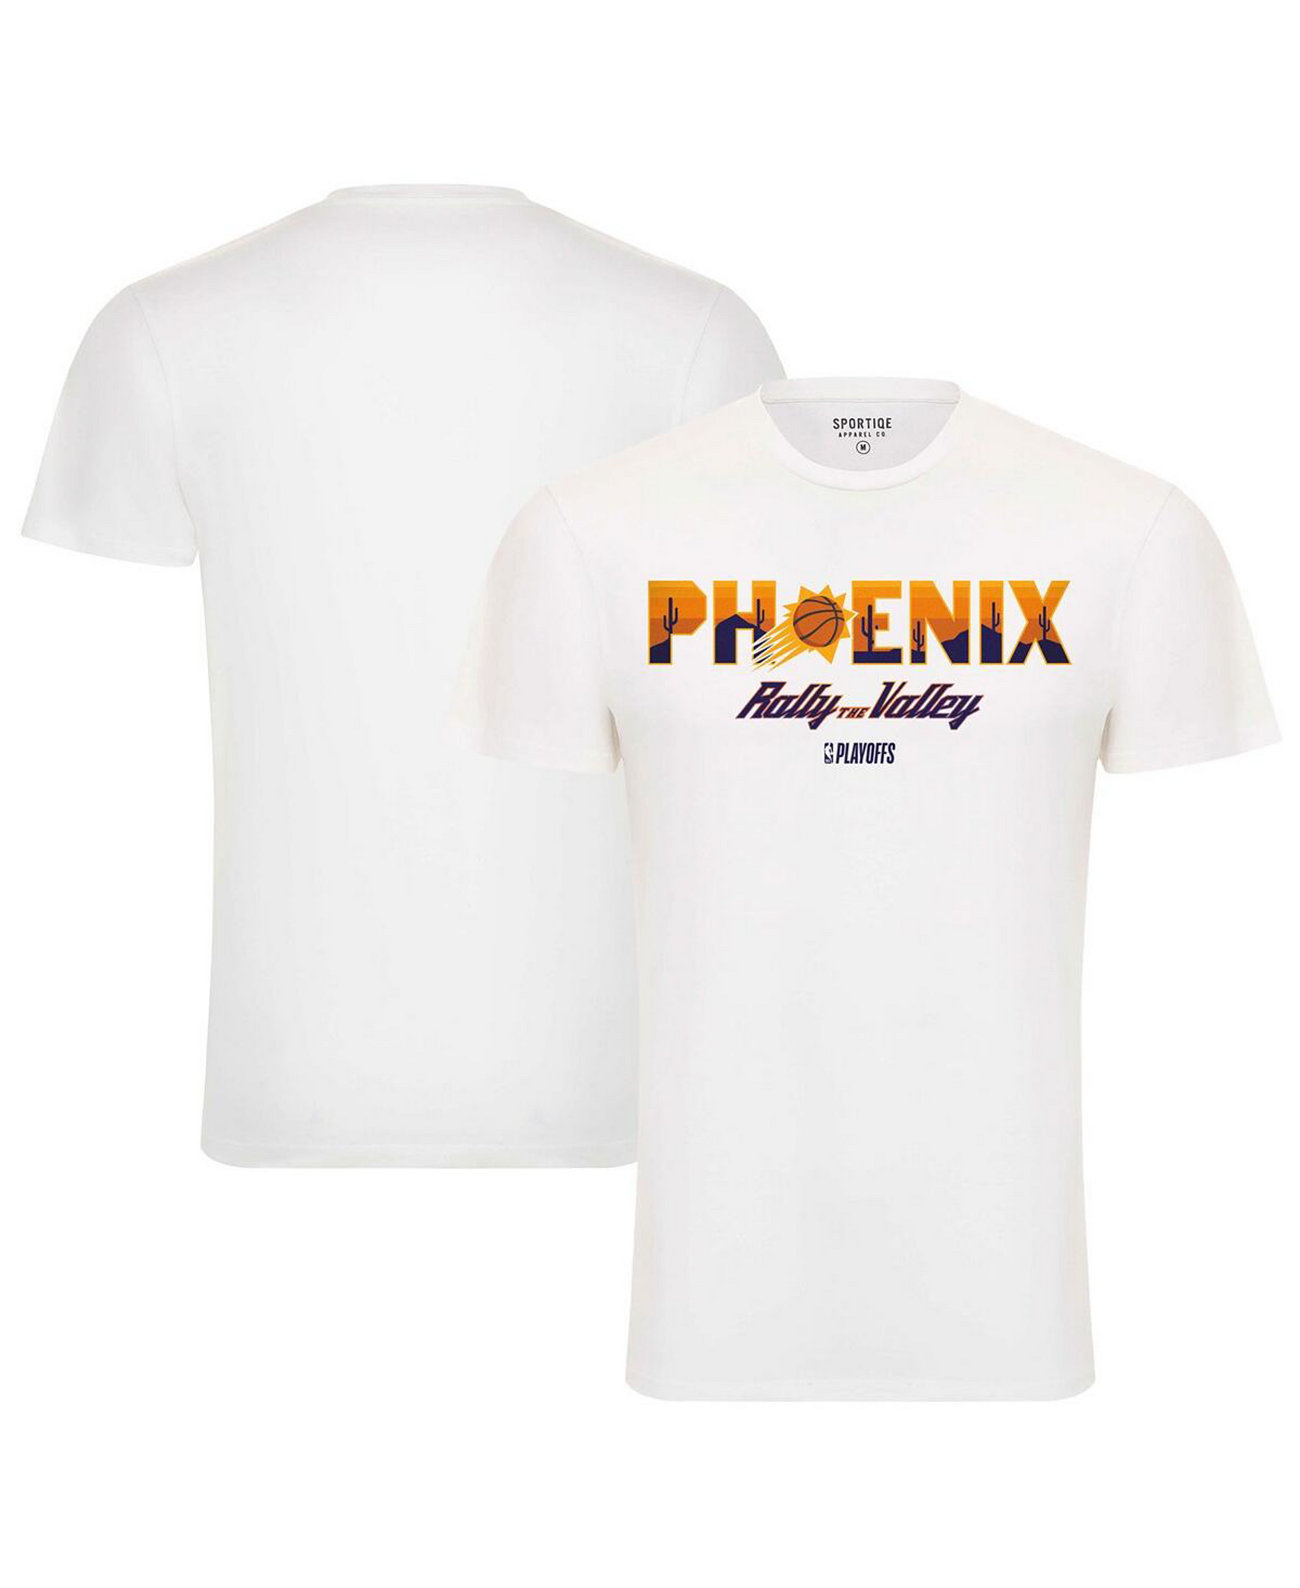 Мужская и женская белая футболка Phoenix Suns NBA Playoffs 2023 Rally the Valley Bingham Sportiqe